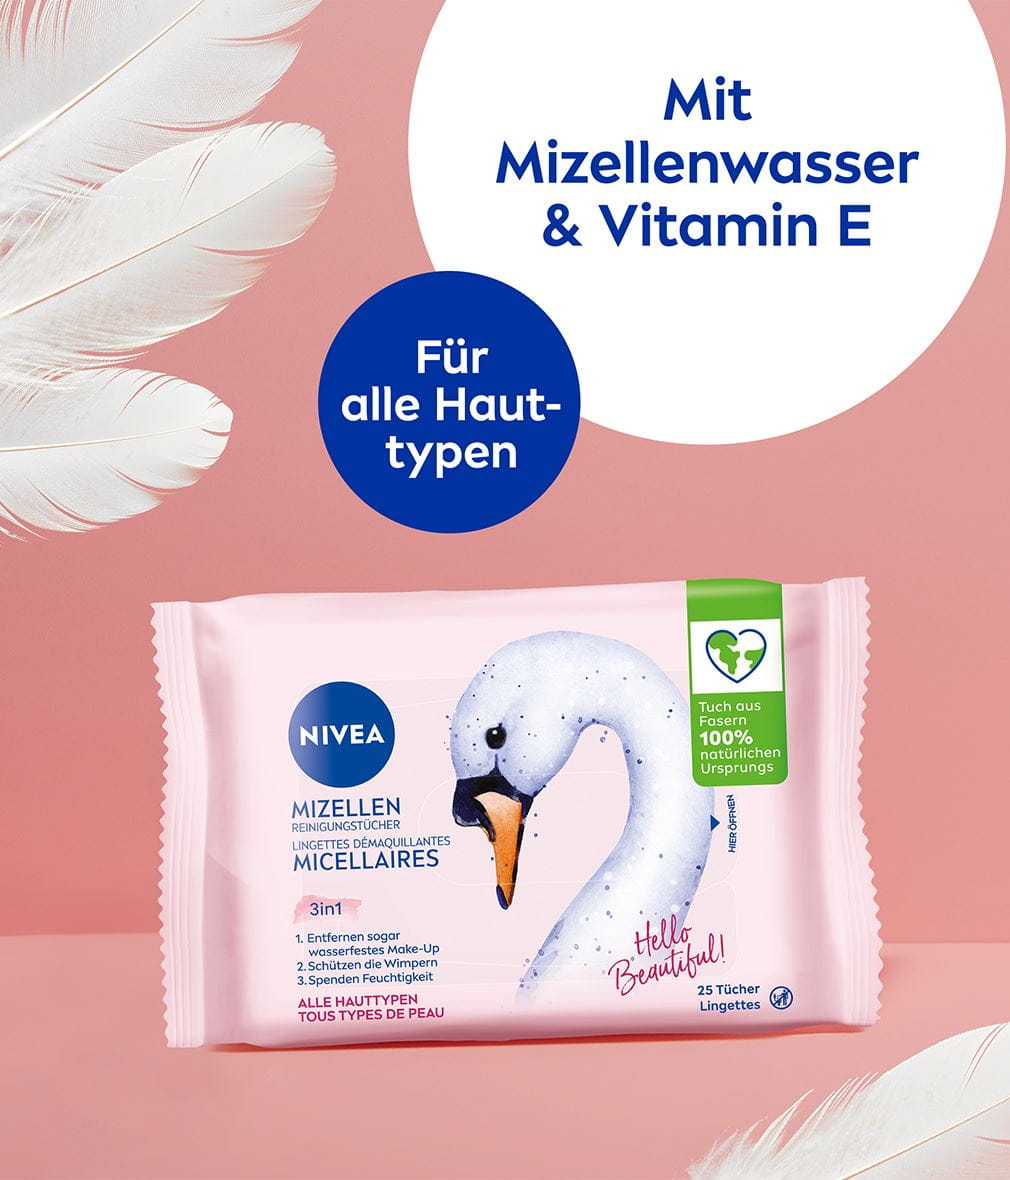 NIVEA Mizellen Reinigungstücher 25 Stück Limited edit. 